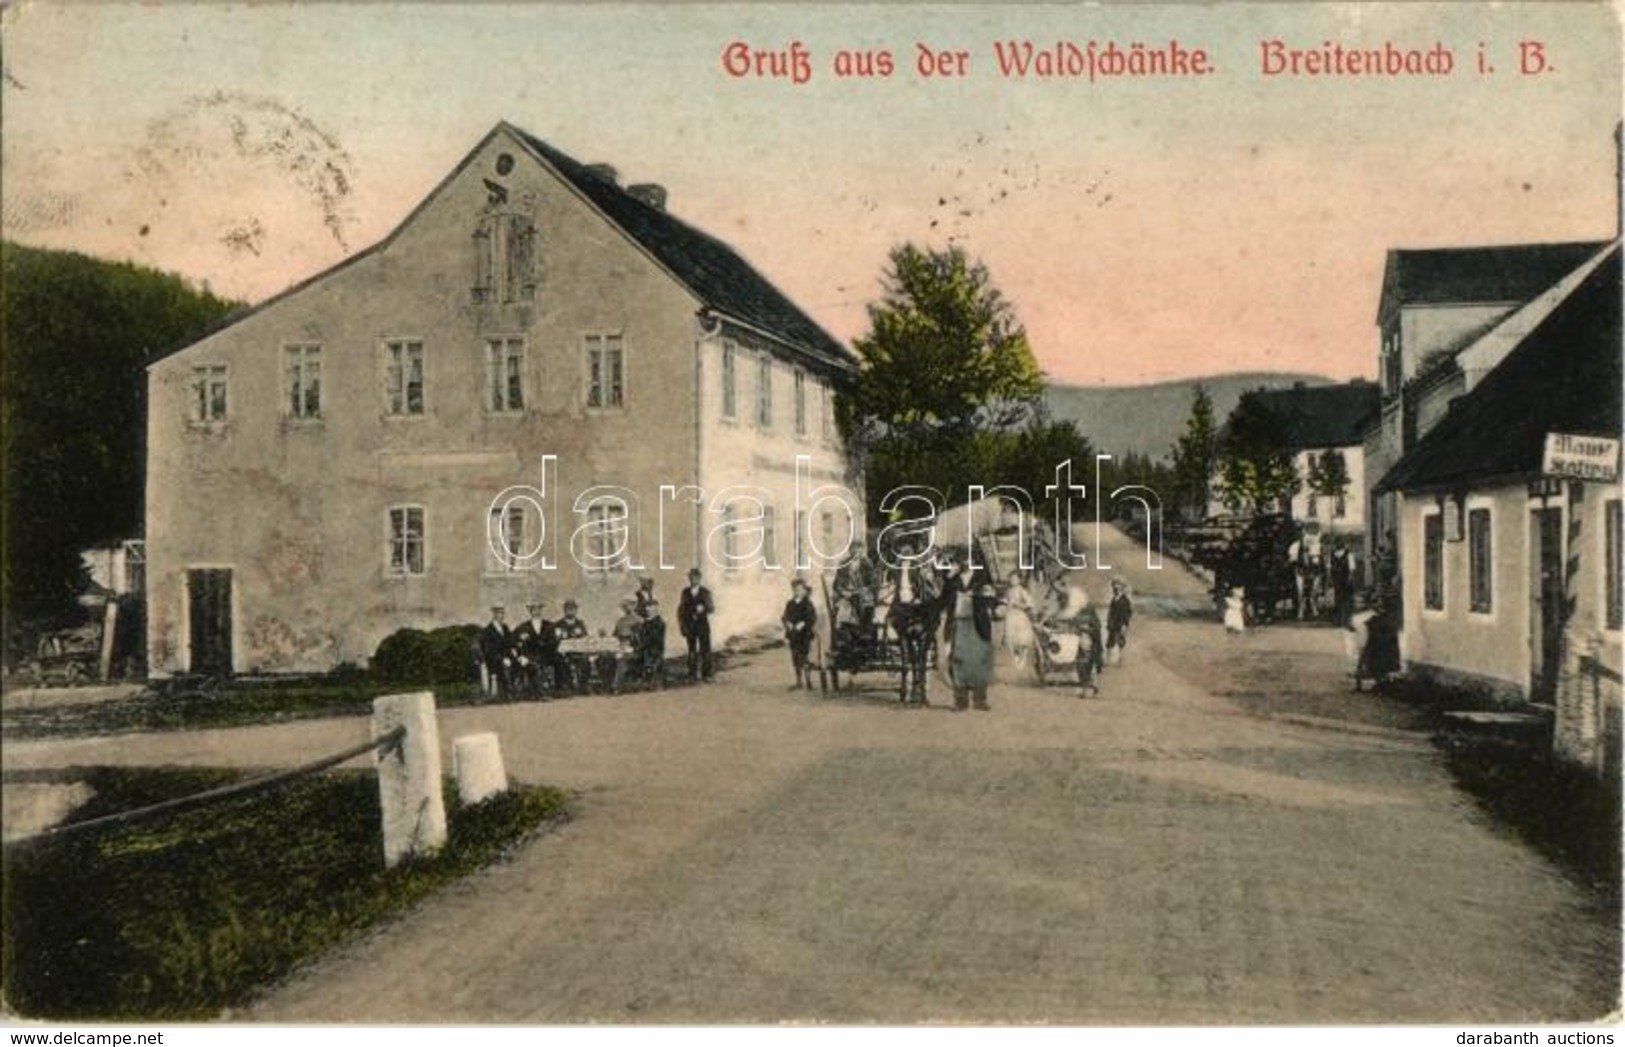 T2 Potucky, Breitenbach In Böhmen; Gruss Aus Der Waldschänke / Street View With Hotel And Restaurant - Unclassified